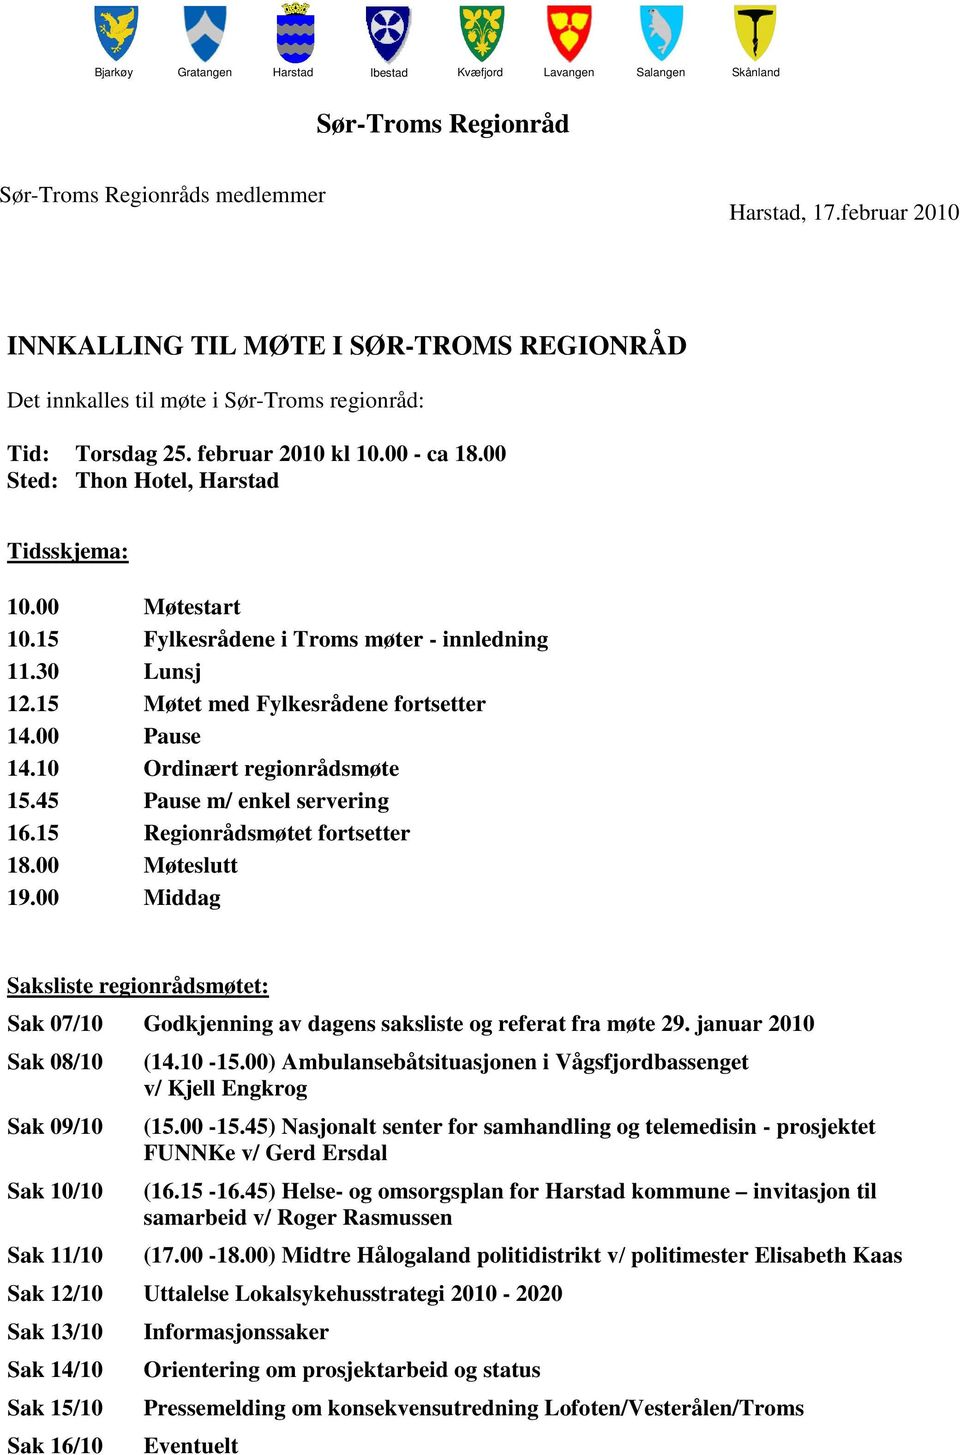 00 Møtestart 10.15 Fylkesrådene i Troms møter - innledning 11.30 Lunsj 12.15 Møtet med Fylkesrådene fortsetter 14.00 Pause 14.10 Ordinært regionrådsmøte 15.45 Pause m/ enkel servering 16.